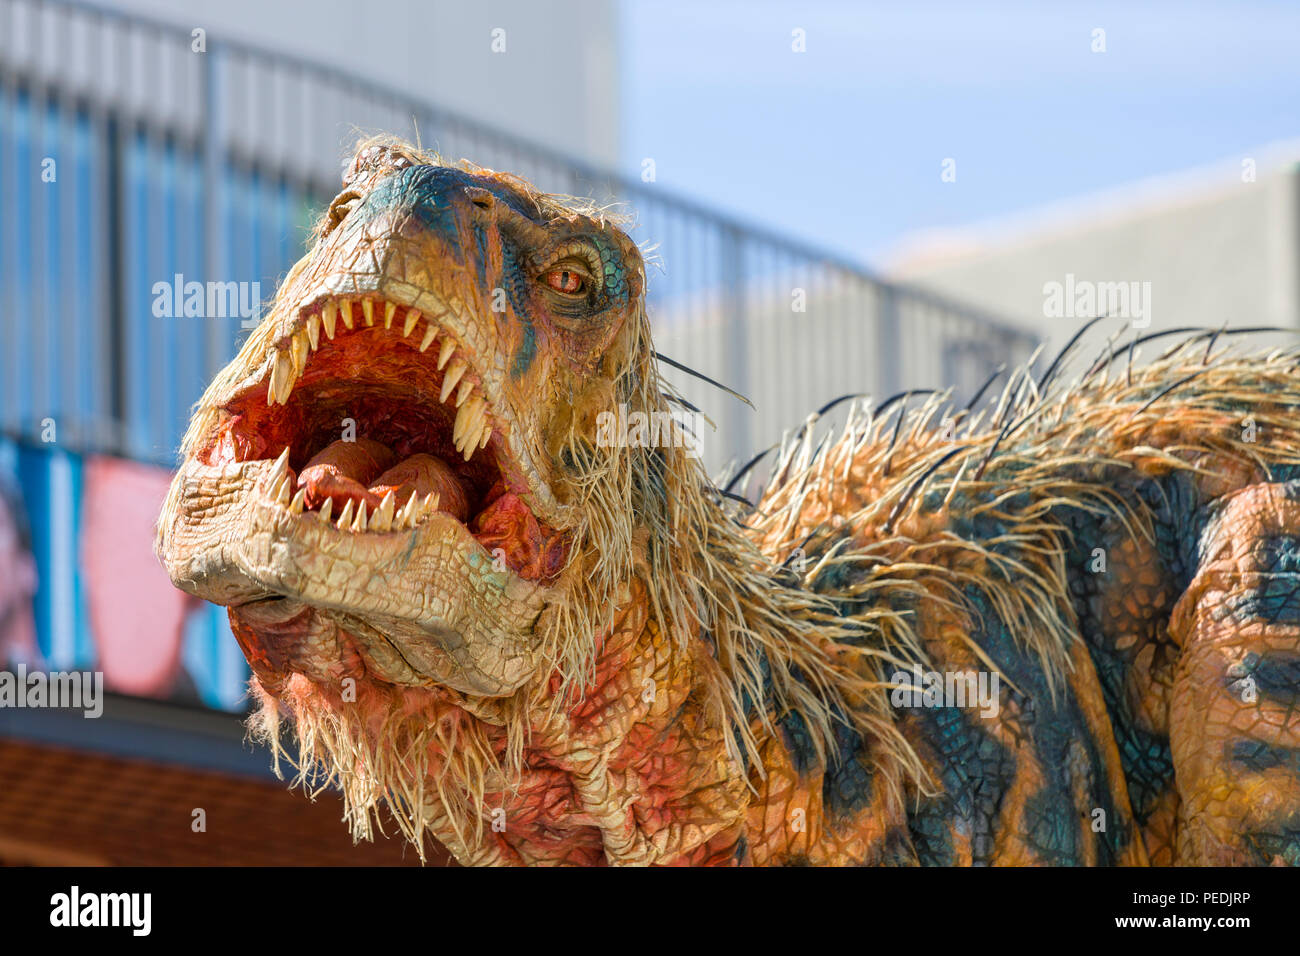 Vita di una creatura di dimensioni da Walking with Dinosaurs - $20 milioni spettacolare arena passeggiando per le strade di Göteborg Foto Stock